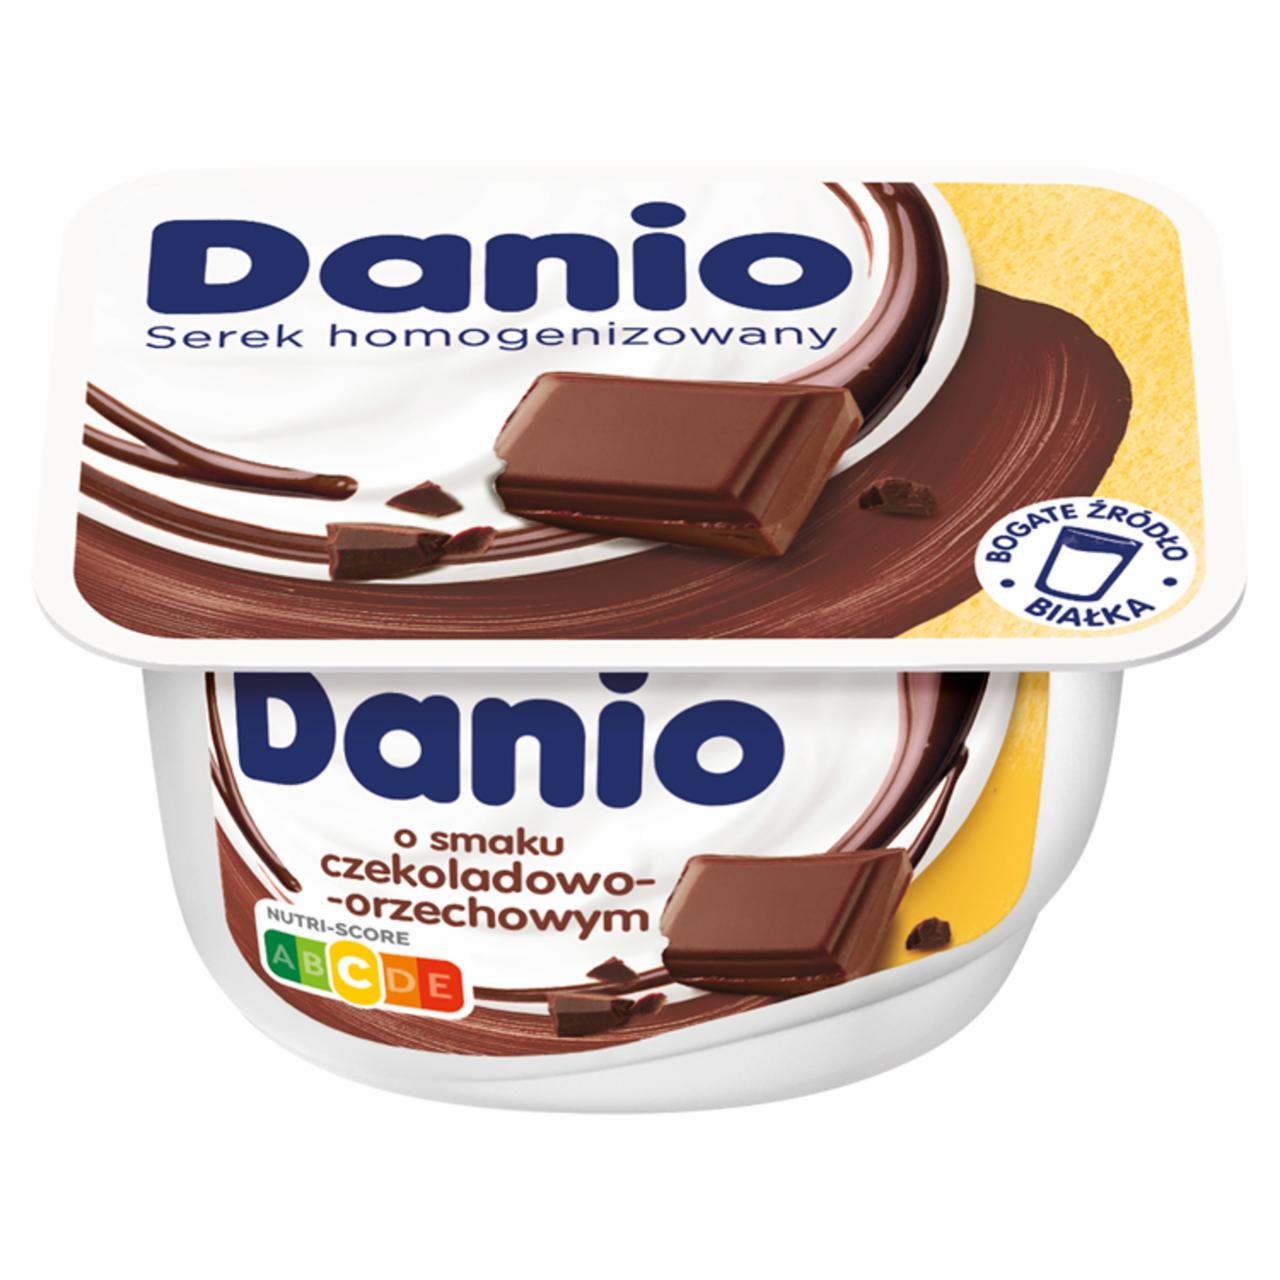 Zdjęcia - Danio Serek homogenizowany o smaku czekoladowo-orzechowym 135 g